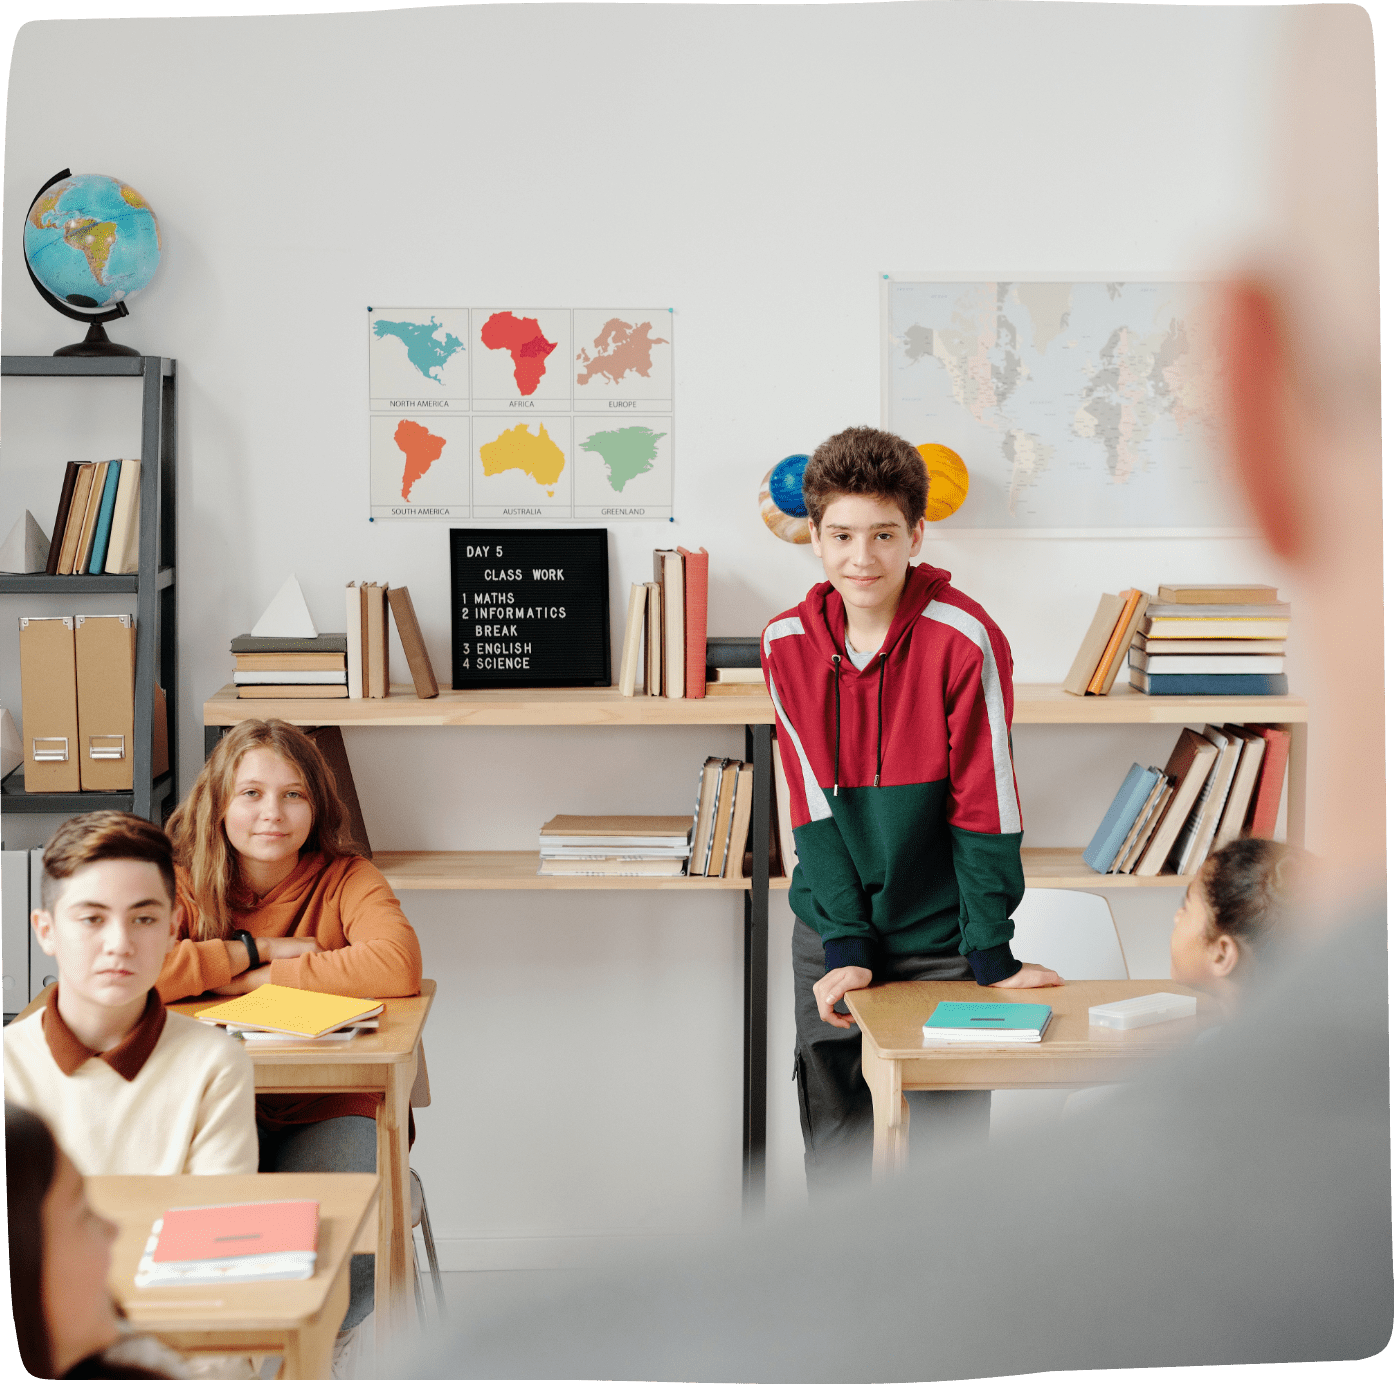 Blik over de schouder van een leraar naar een schoolklas met 6 leerlingen met lesboeken op tafel